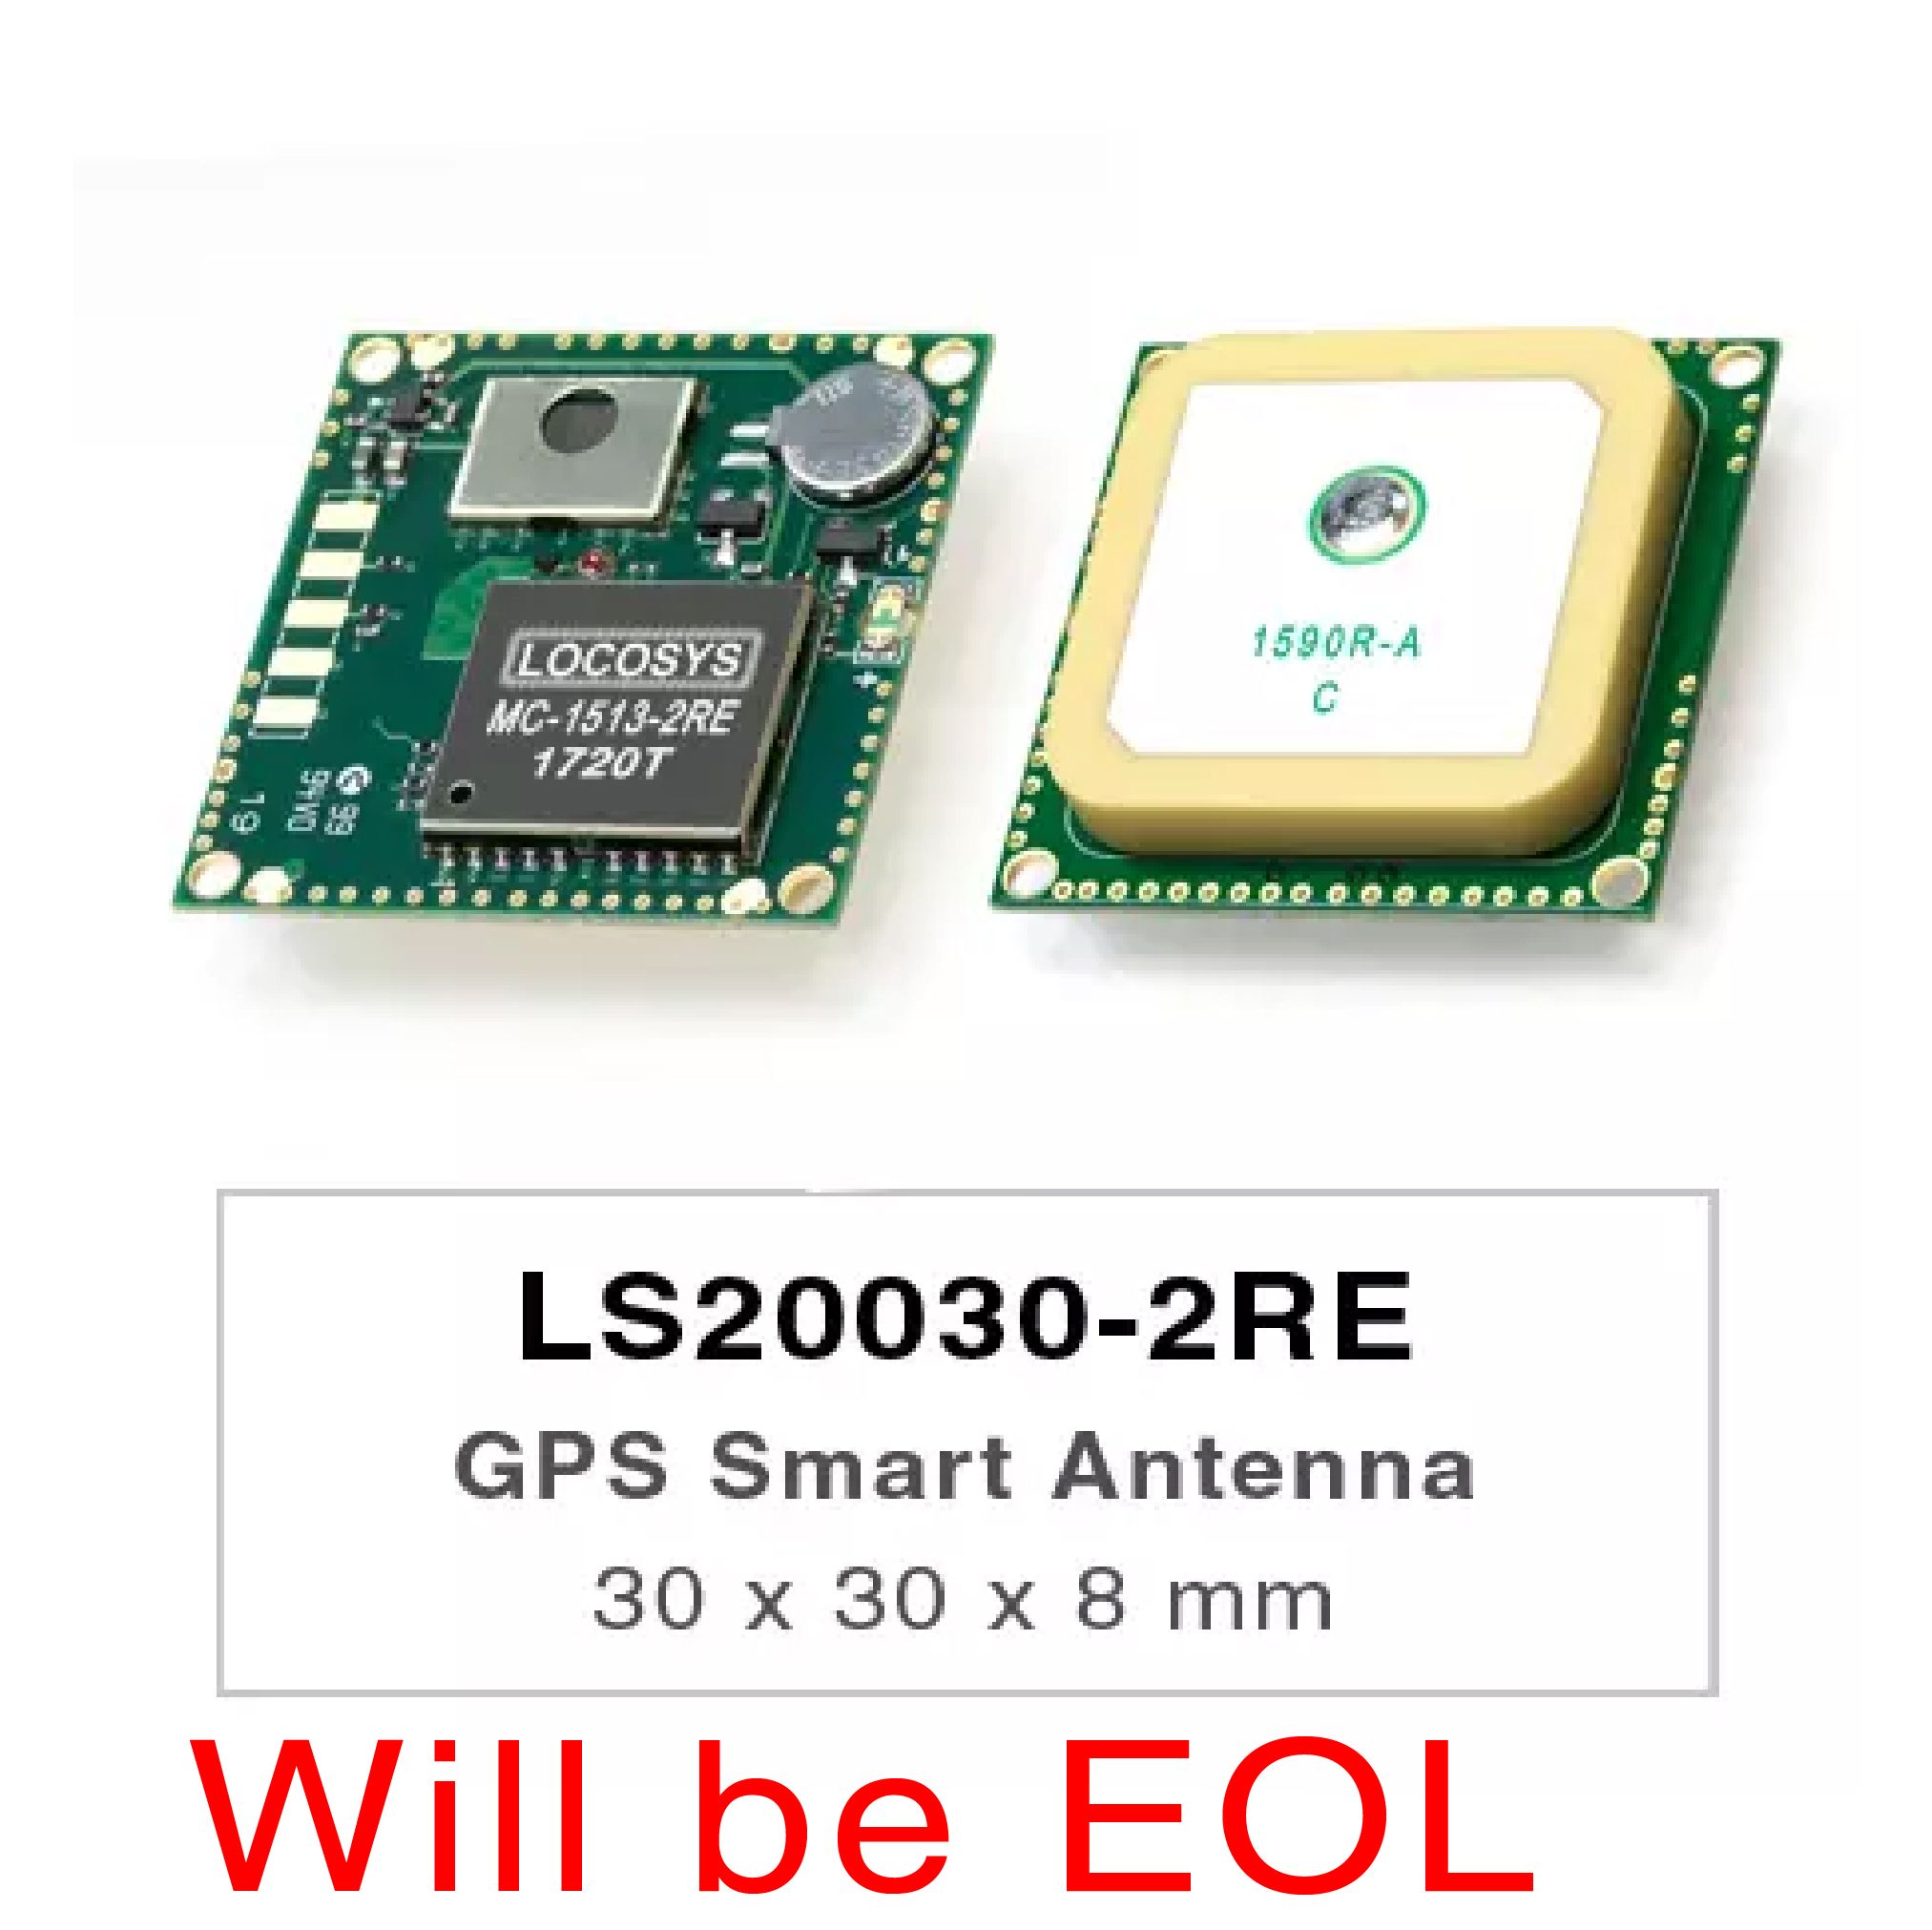 LS20030~2-2RE-Produkte sind komplette GPS-Smart-Antennenempfänger, einschließlich einer eingebetteten Antenne und GPS-Empfängerschaltungen, die für ein breites Spektrum von OEM-Systemanwendungen ausgelegt sind.